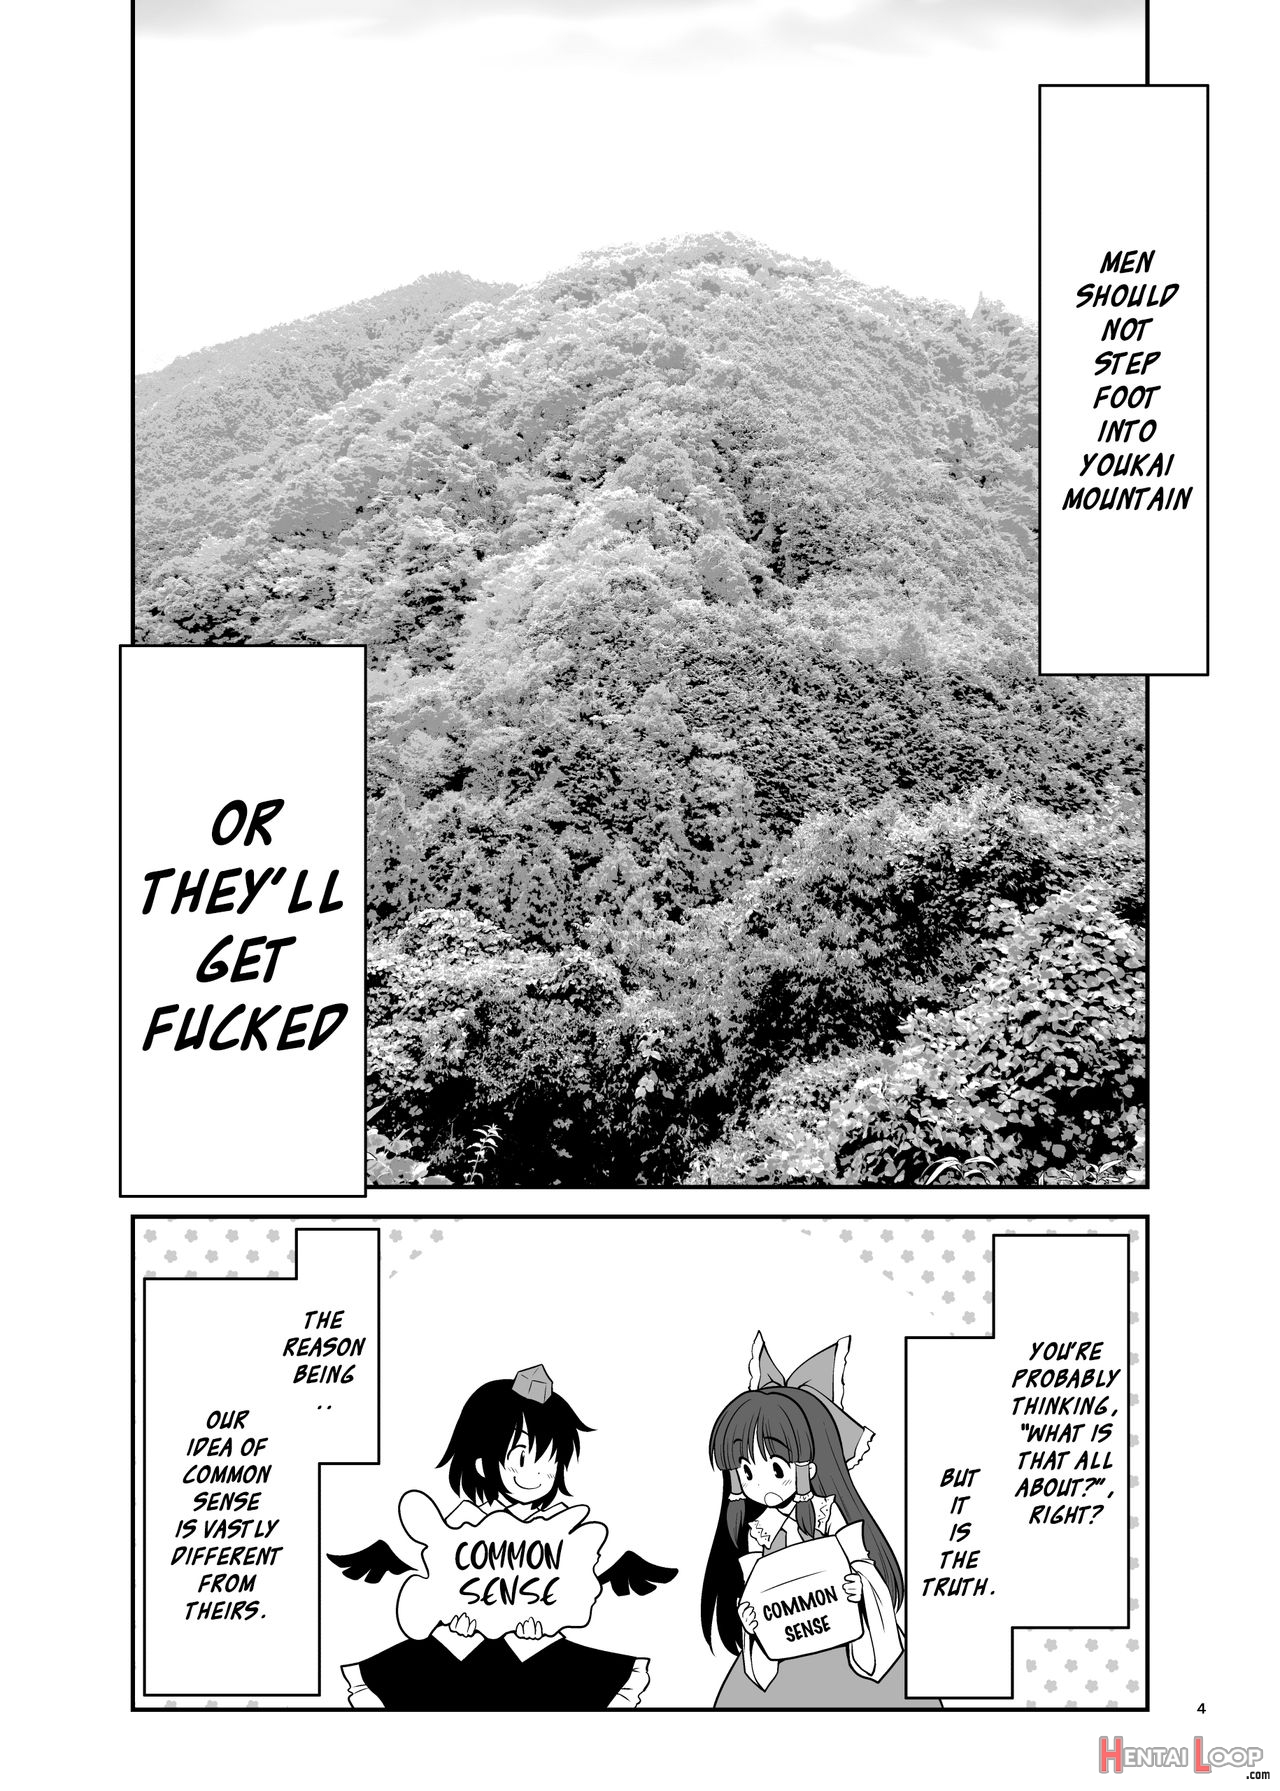 Nureru Youkai No Yama page 4